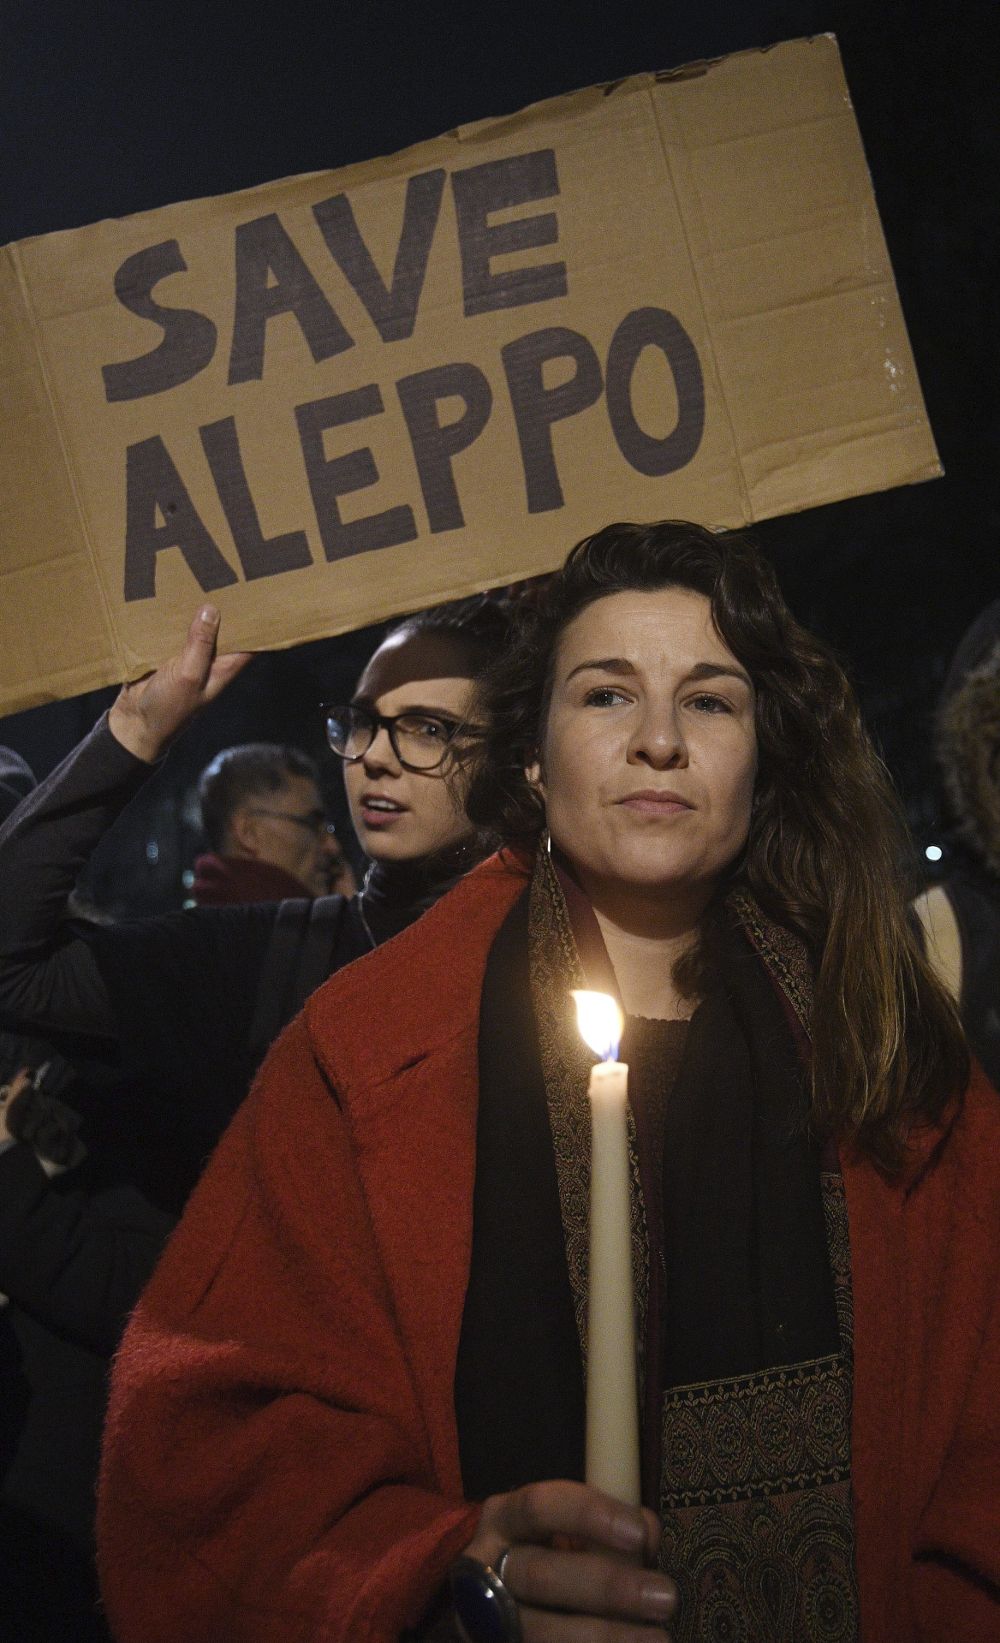 Vista de dos manifestantes, uno sosteniendo una vela y otro una pancarta en la que se puede leer 'Salvad a Alepo' durante una manifestación contra los bombardeos en Alepo y el papel de Siria delante del número 10 de Downing Street en Londres, Reino Unido.